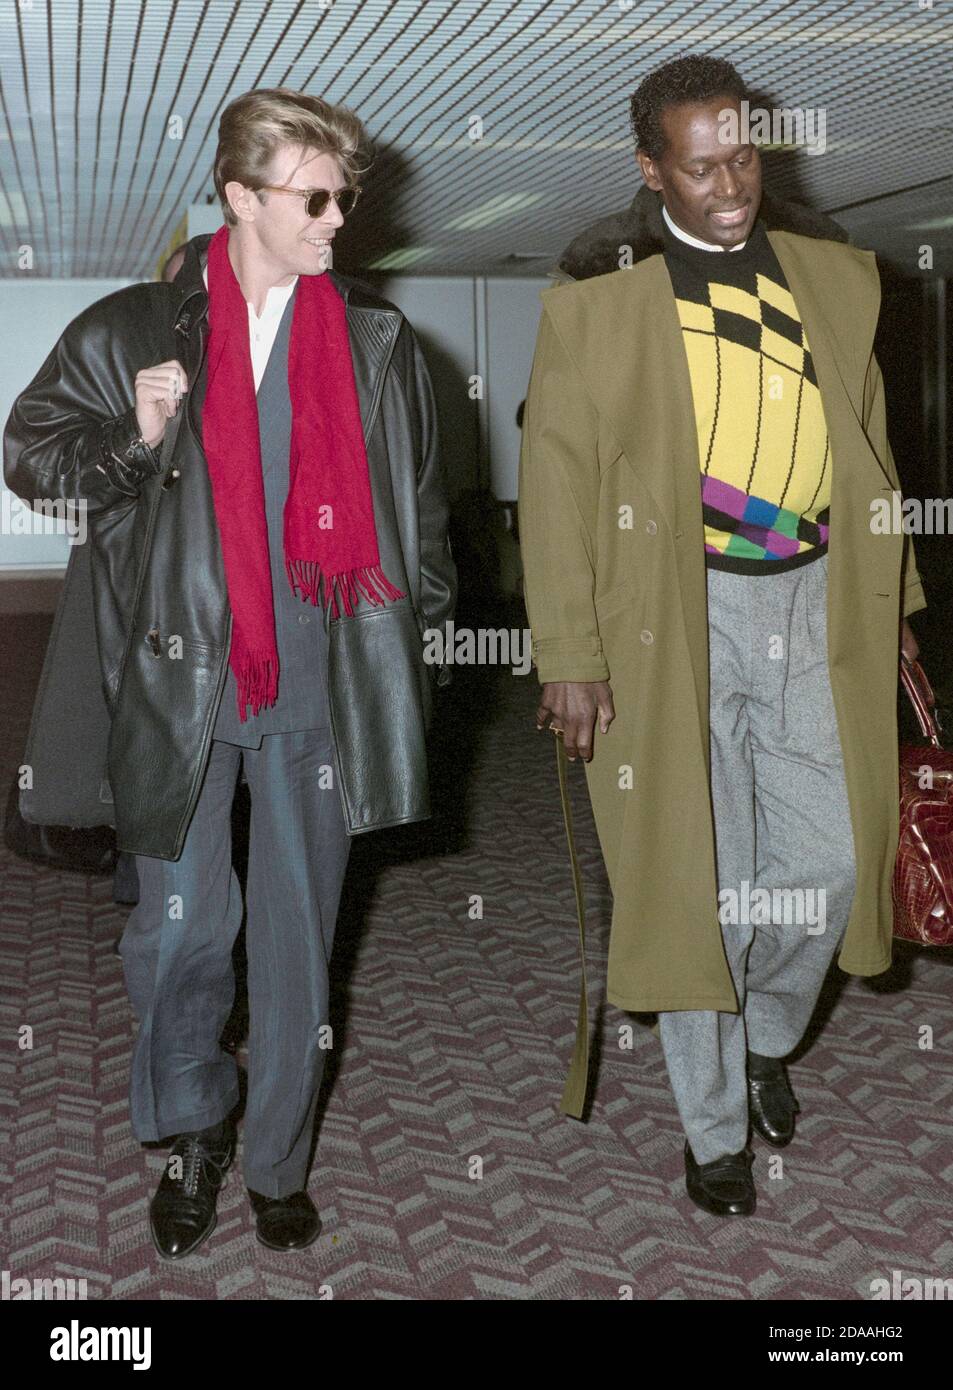 L'auteur-compositeur David Bowie avec Luther Vandross à Londres Heathrow Aéroport Mars 1990 Banque D'Images